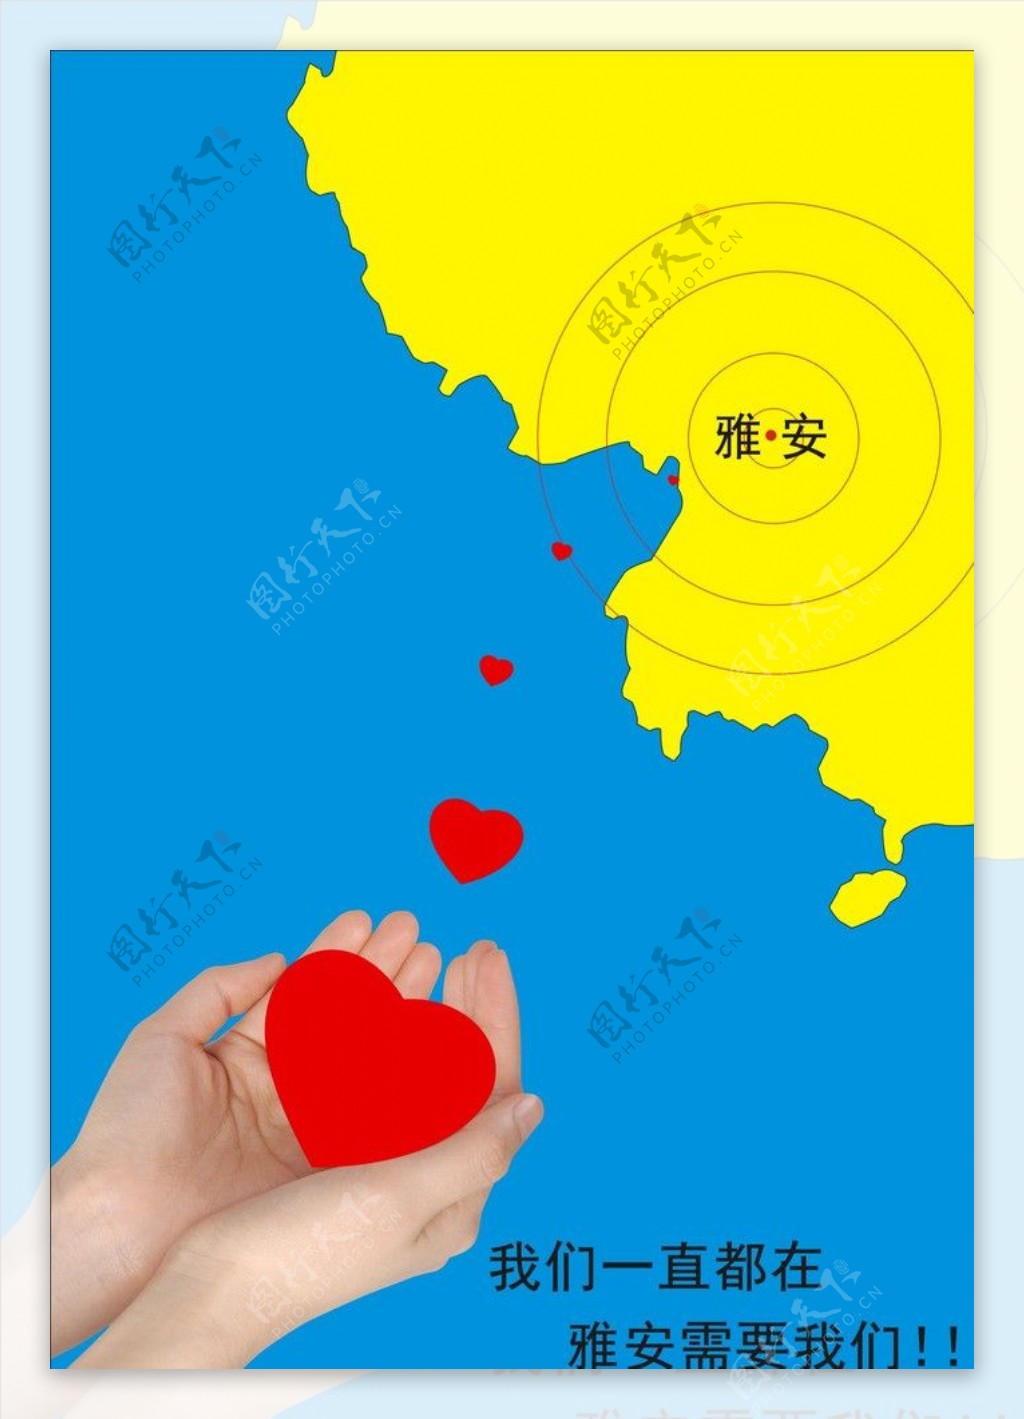 雅安地震爱心宣传海报图片